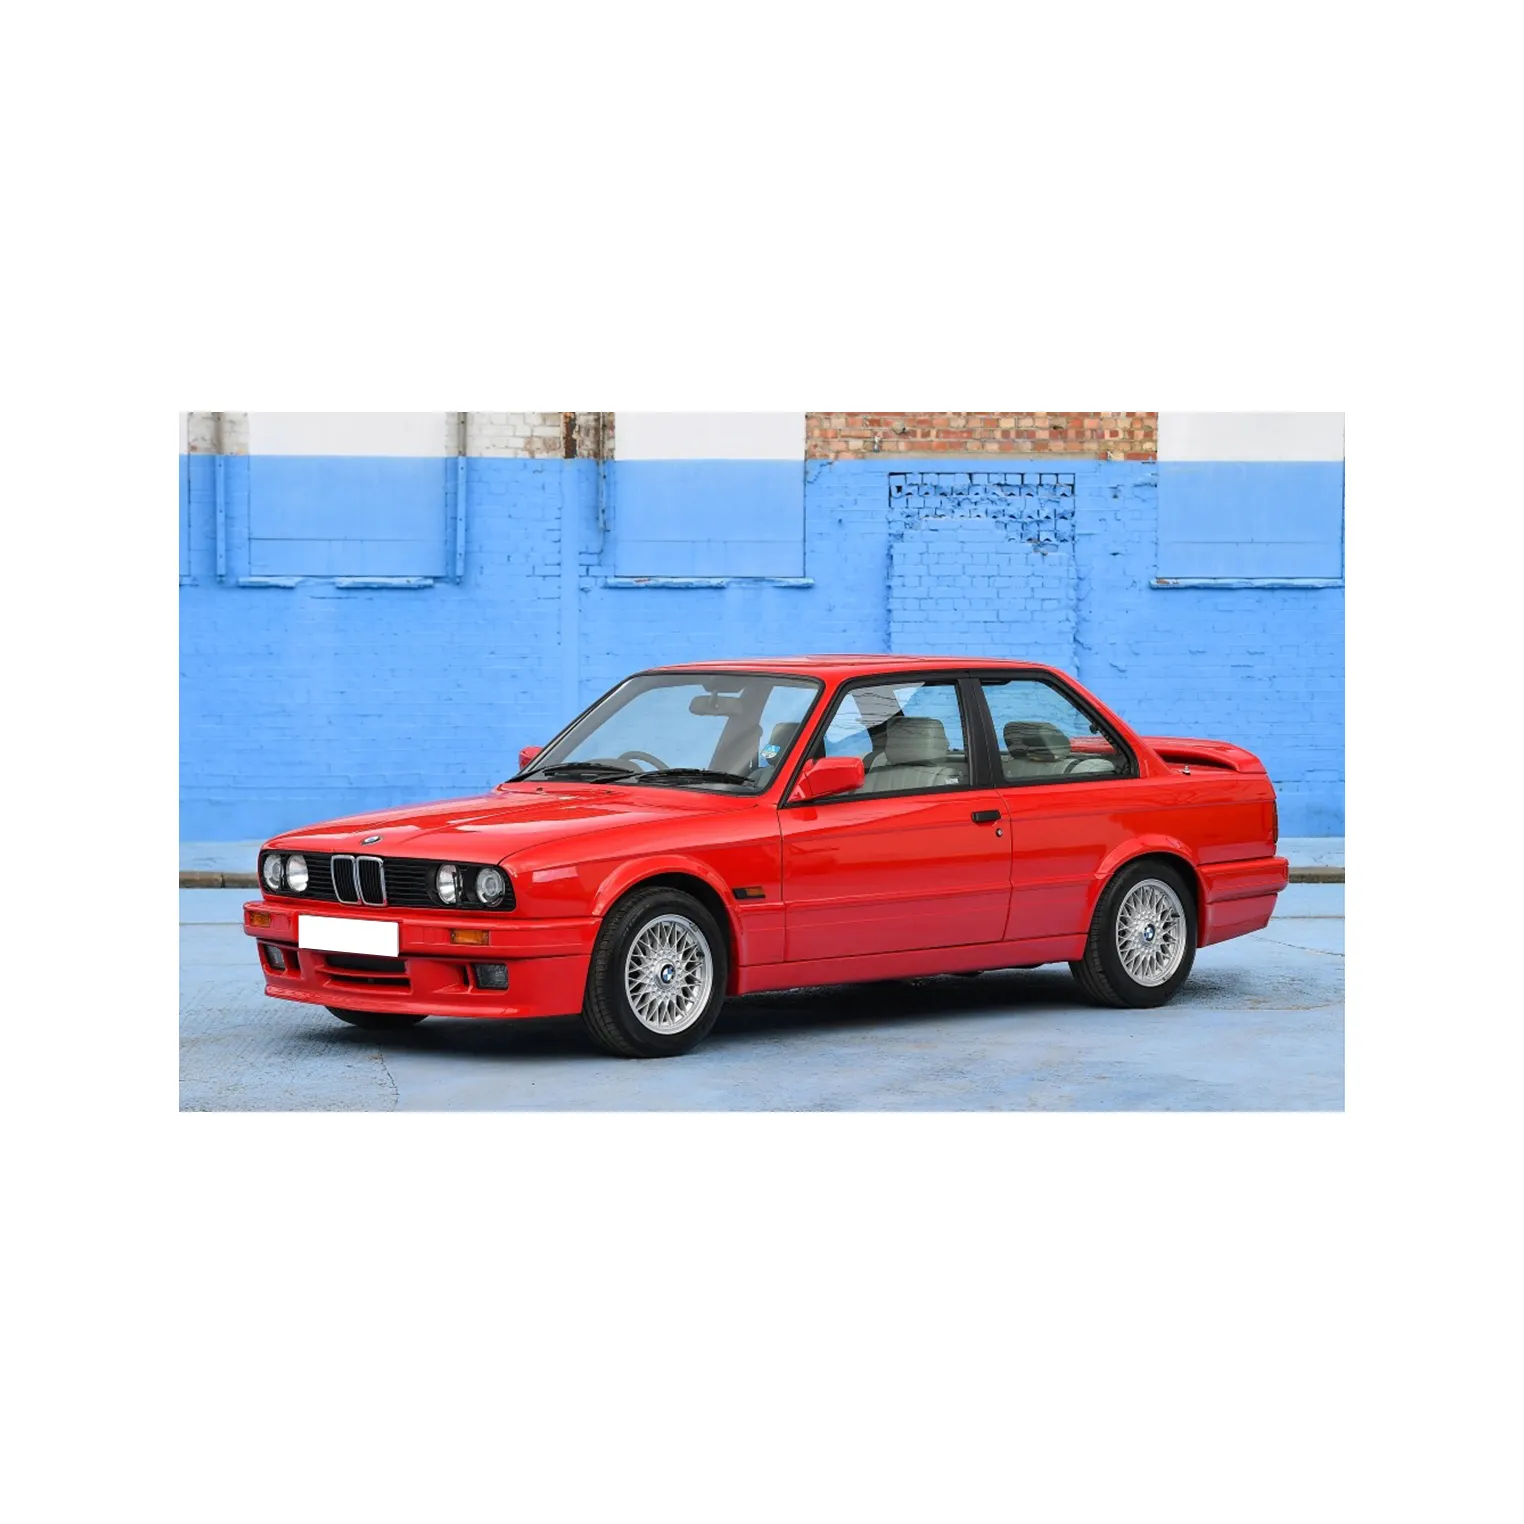 Подержанный 2011 BMW 3 серии E90 M3 4,0 V8 DCT седан для продажи